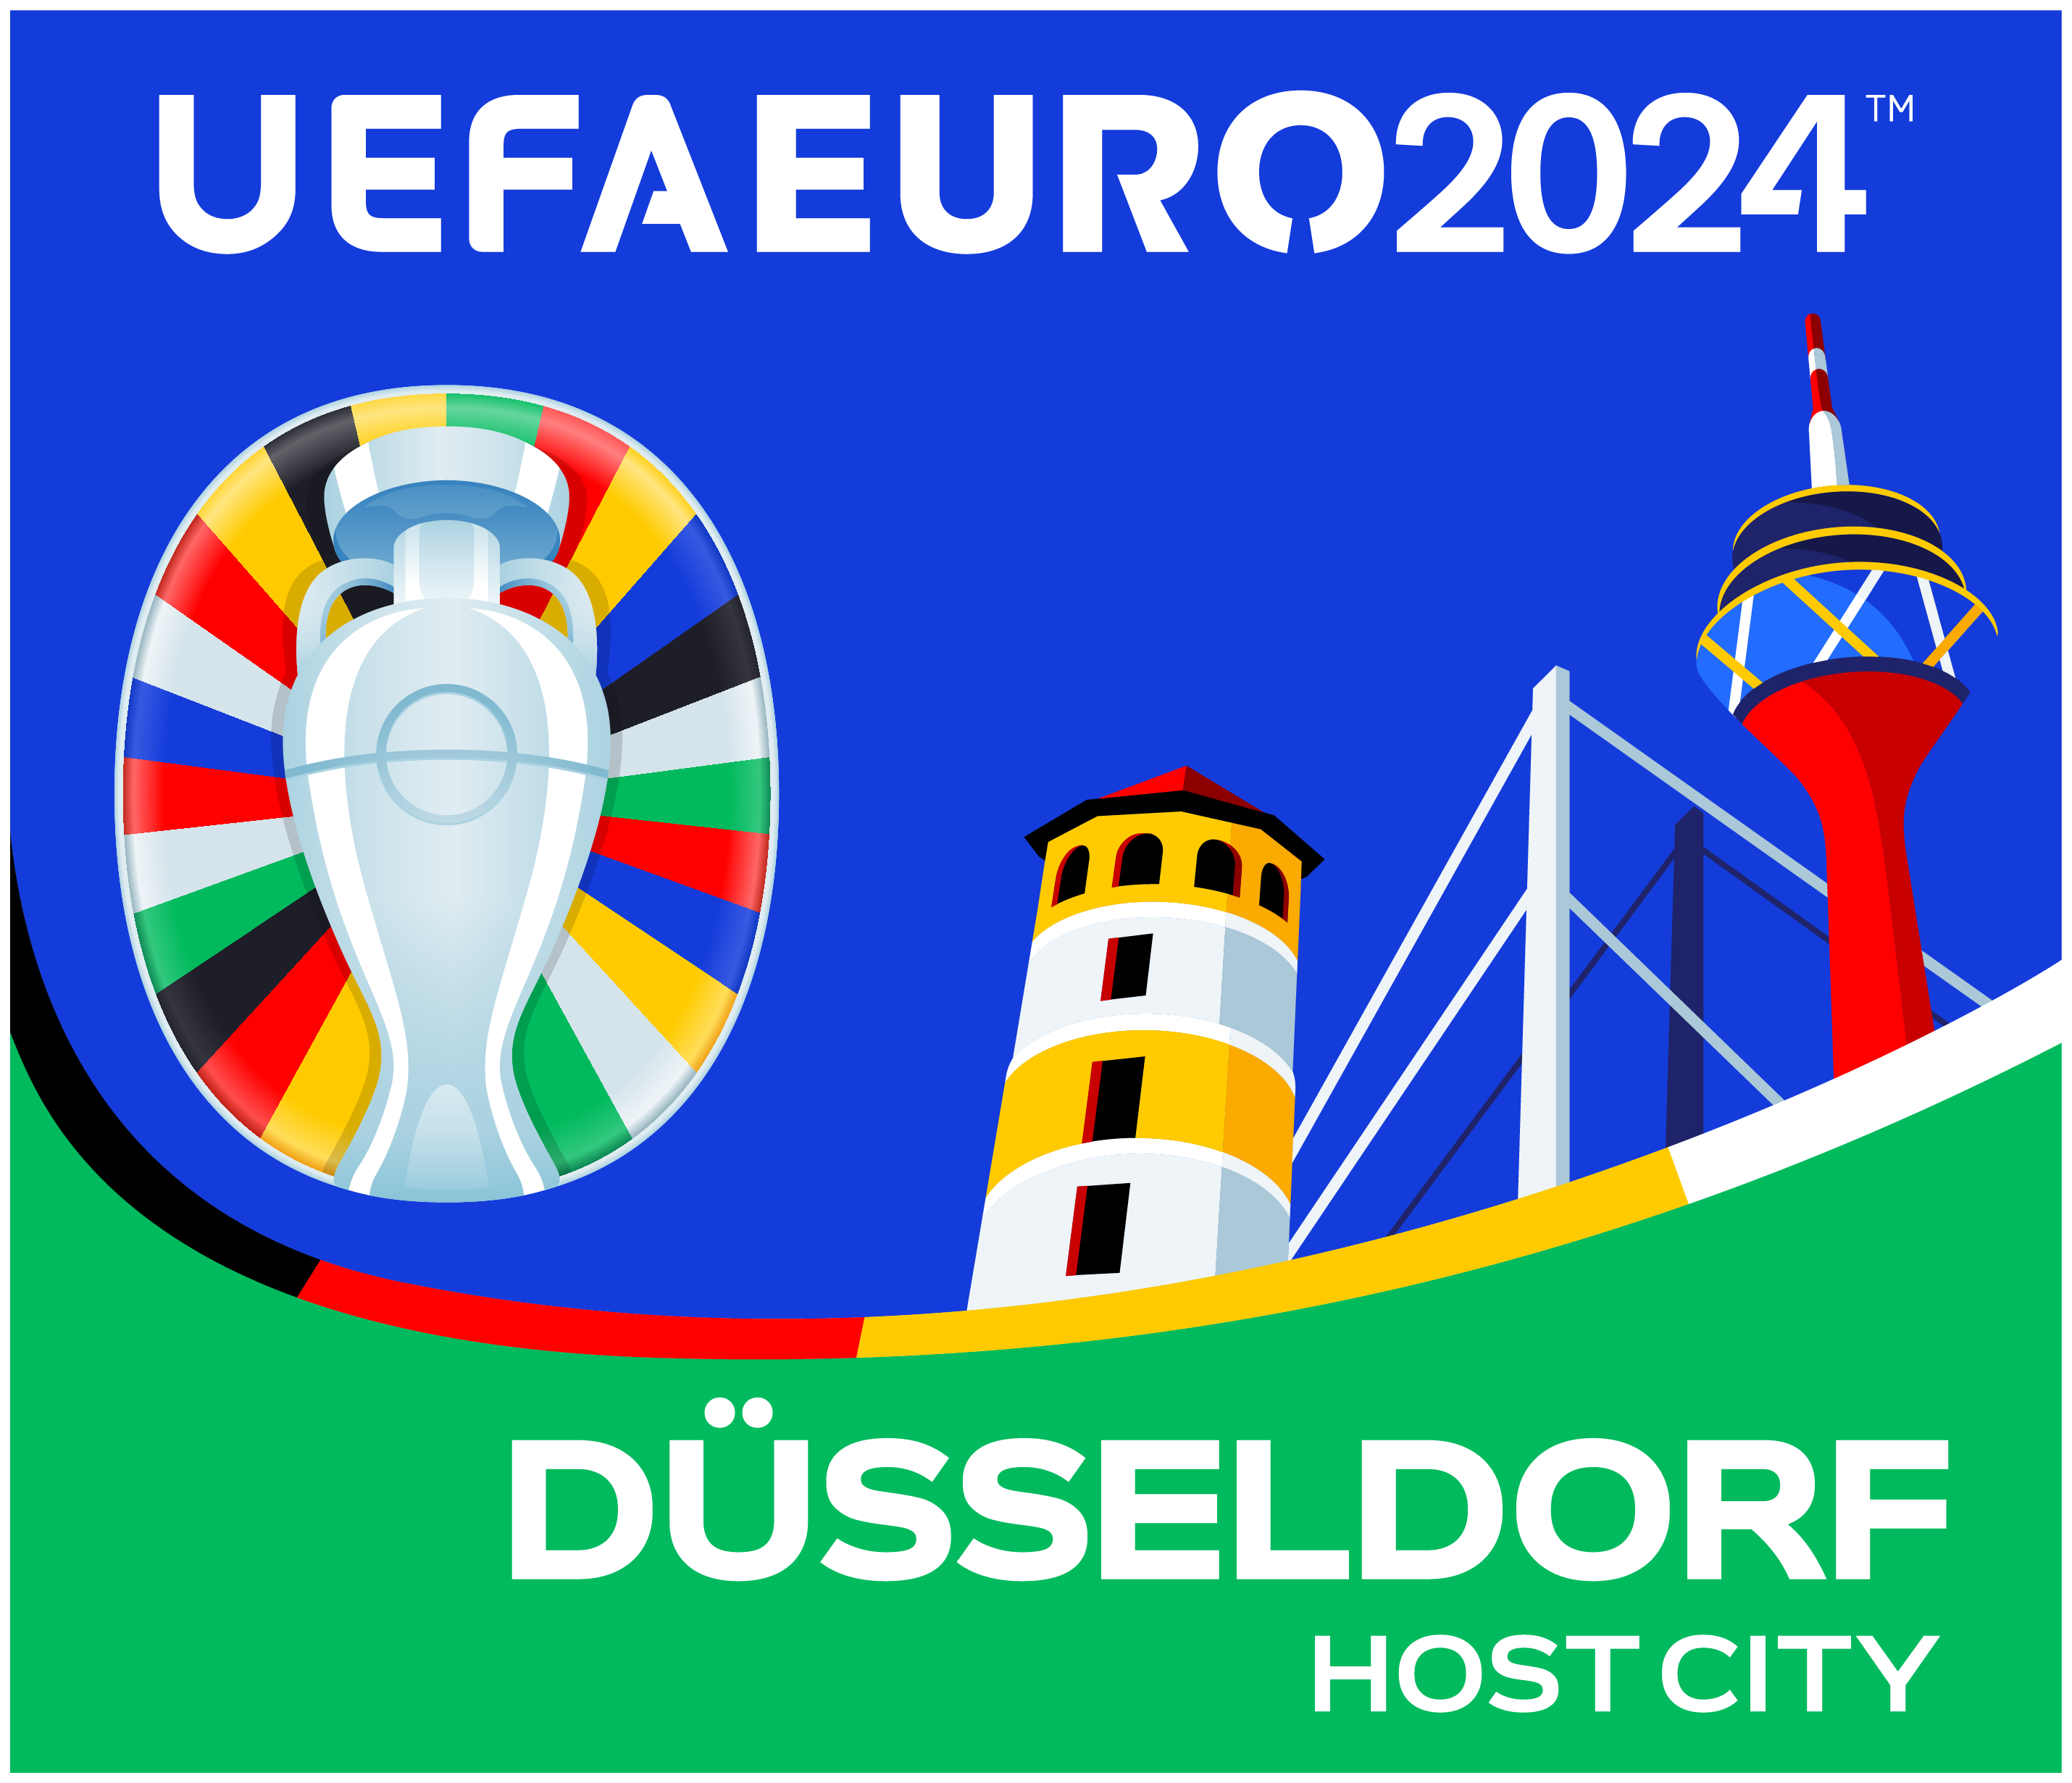 Das Düsseldorfer Logo zur UEFA EURO 2024 in den Farben des Hauptlogos mit den markanten Gebäuden Schlossturm, Rheinturm und Rheinkniebrücke © UEFA